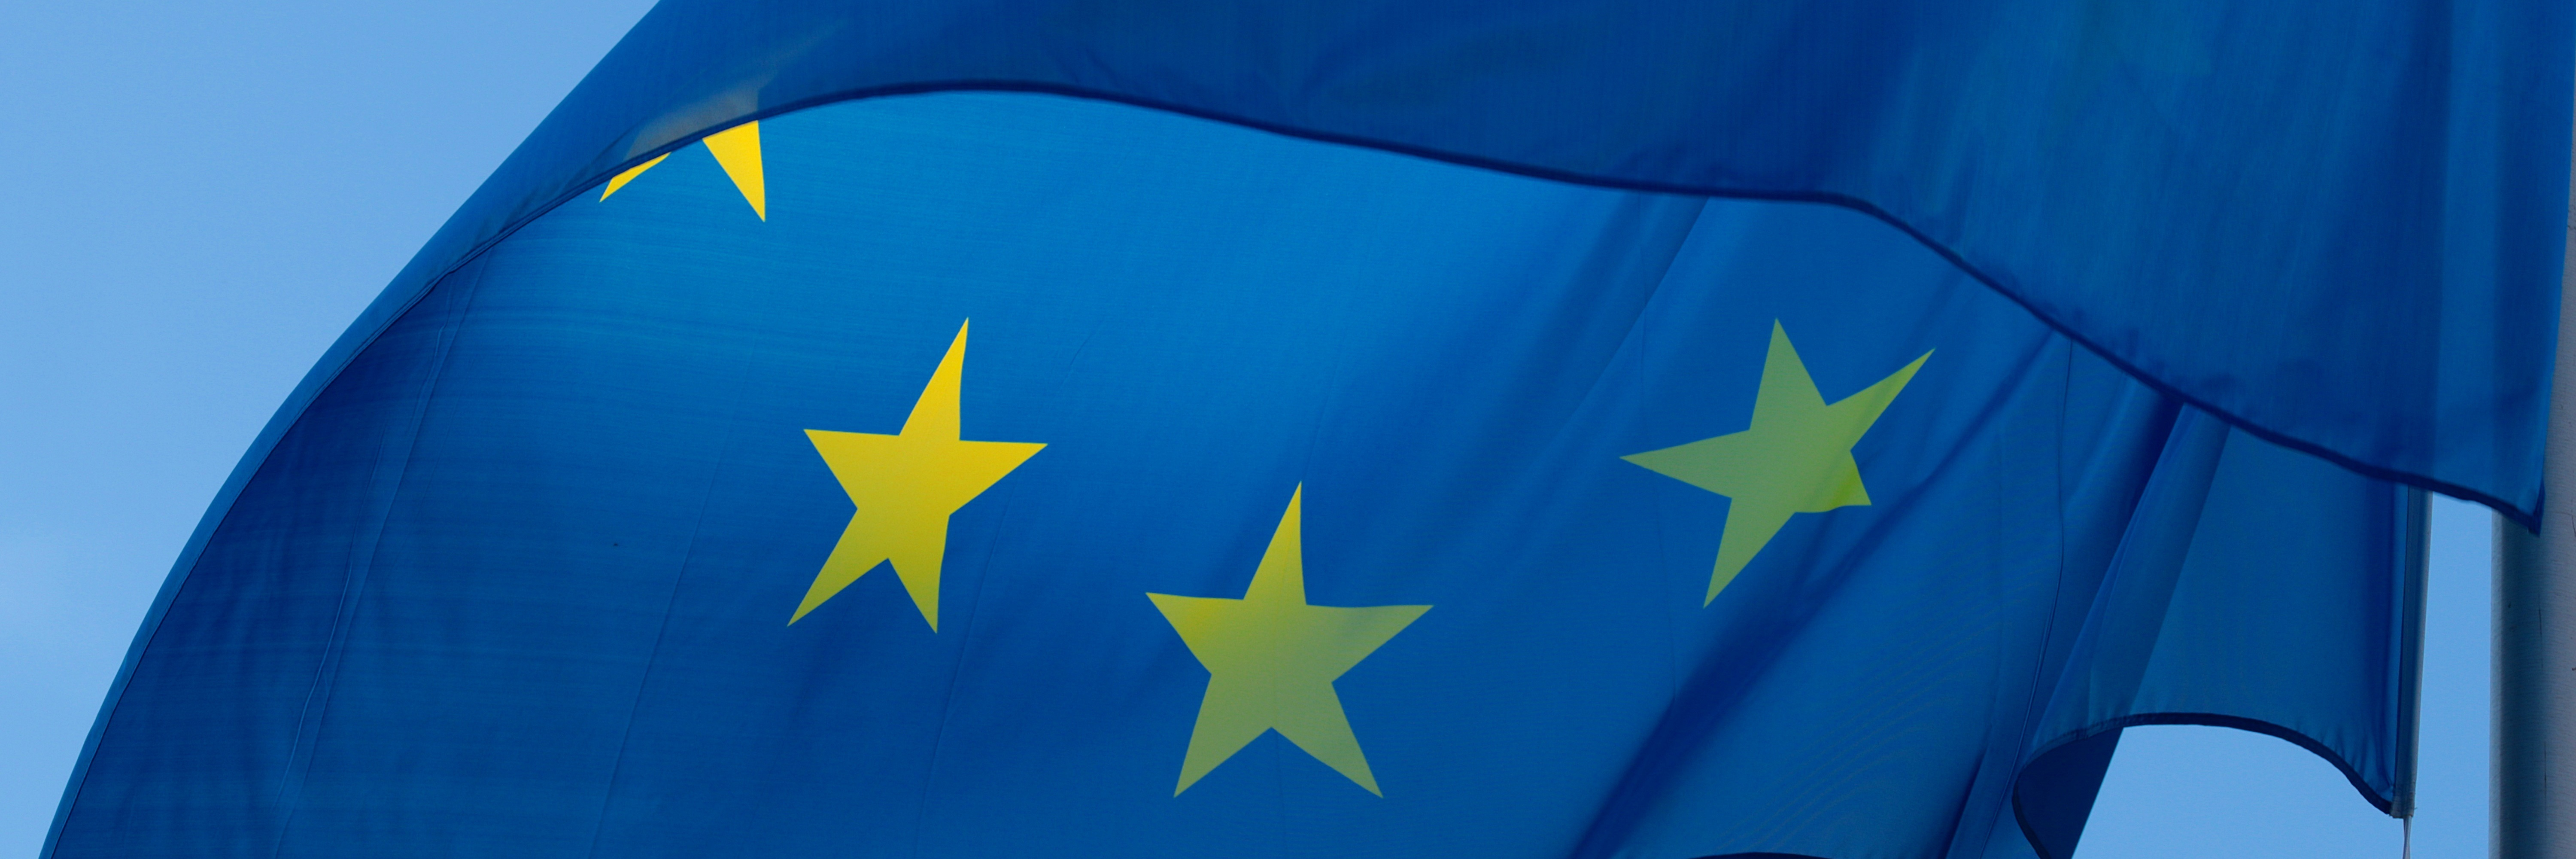 Detail of a European flag